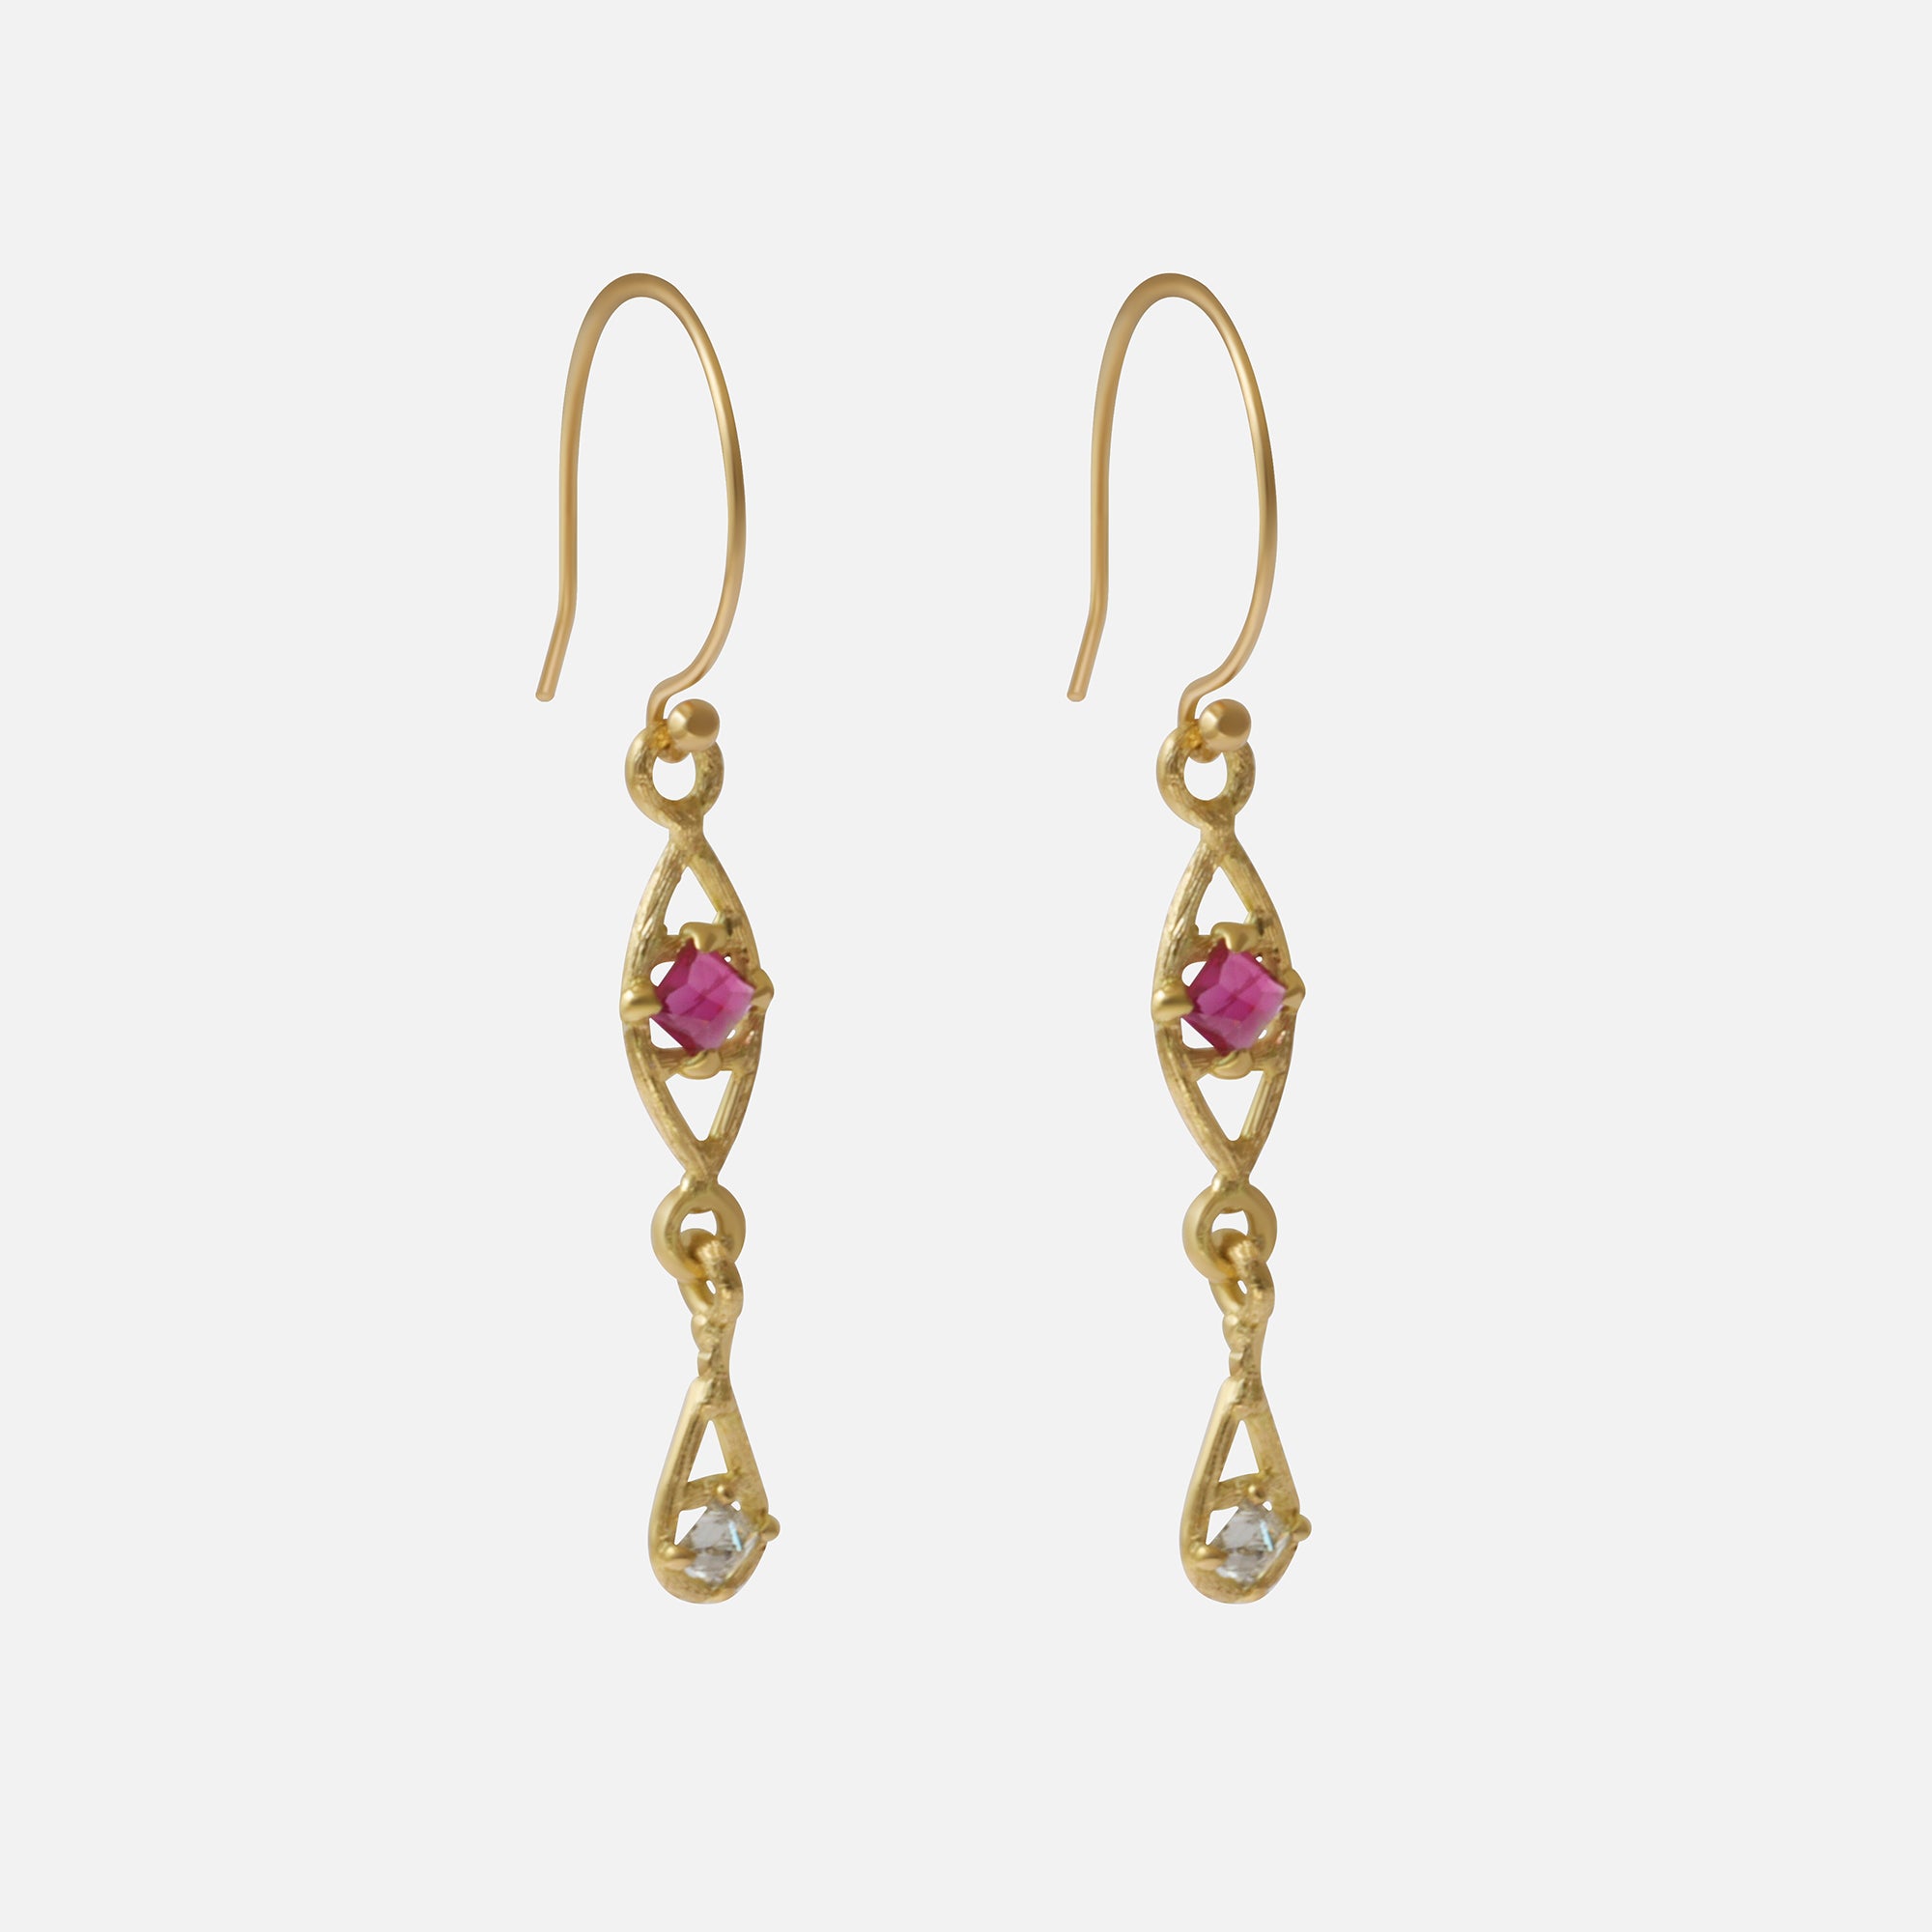 Silk / Pyramid Ruby Earrings By Hiroyo in earrings Category